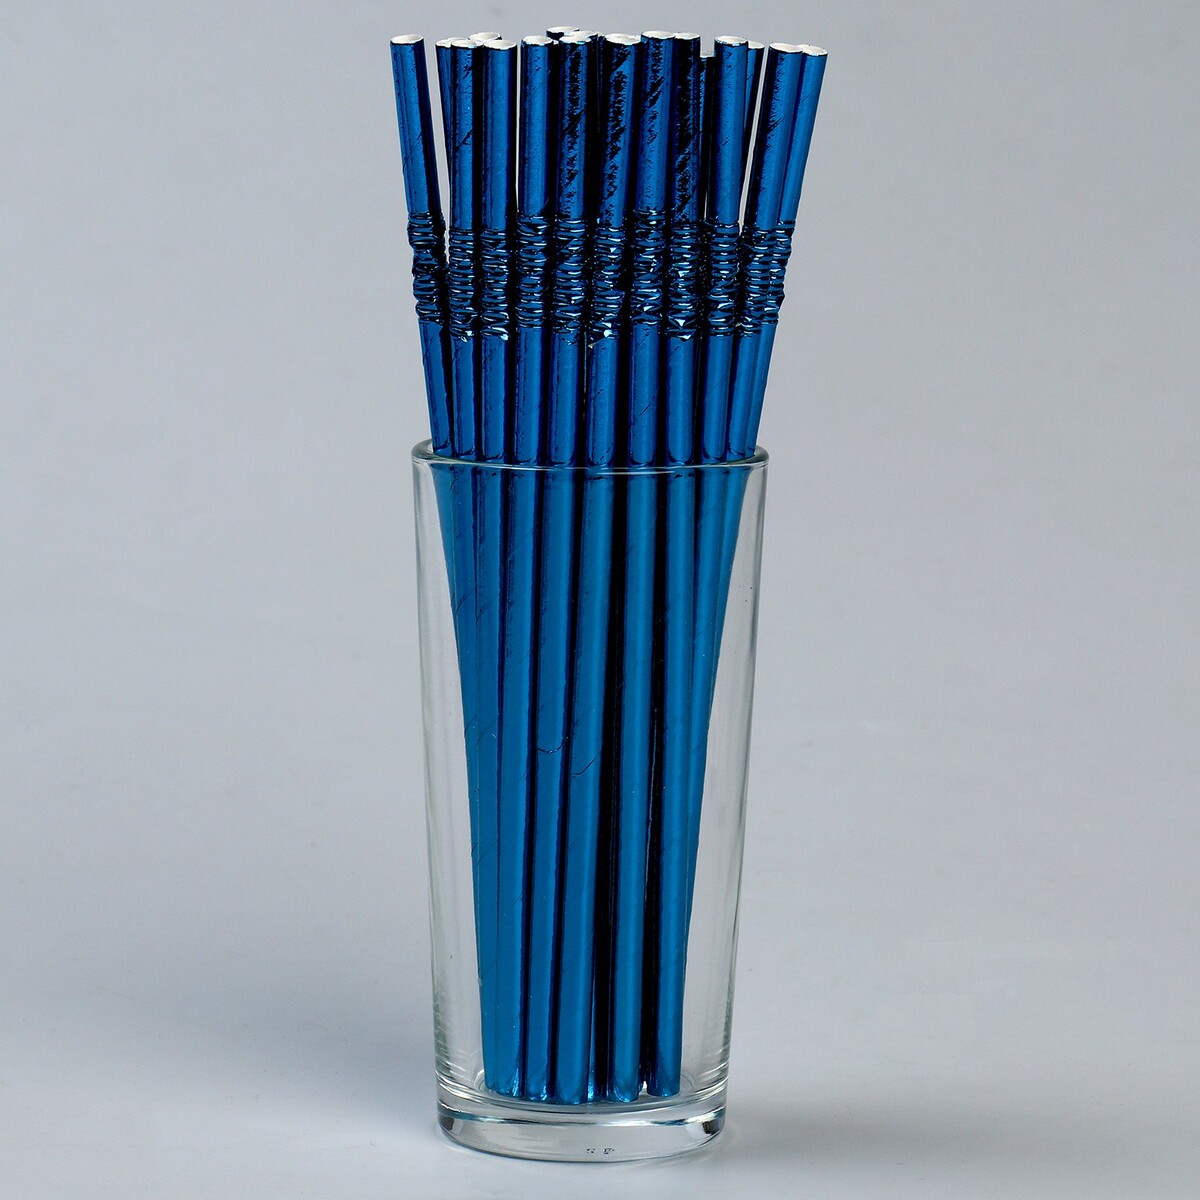 Трубочки для коктейля с гофрой, в наборе 25 штук, цвет синий трубочки для коктейля с гофрой в наборе 25 штук синий